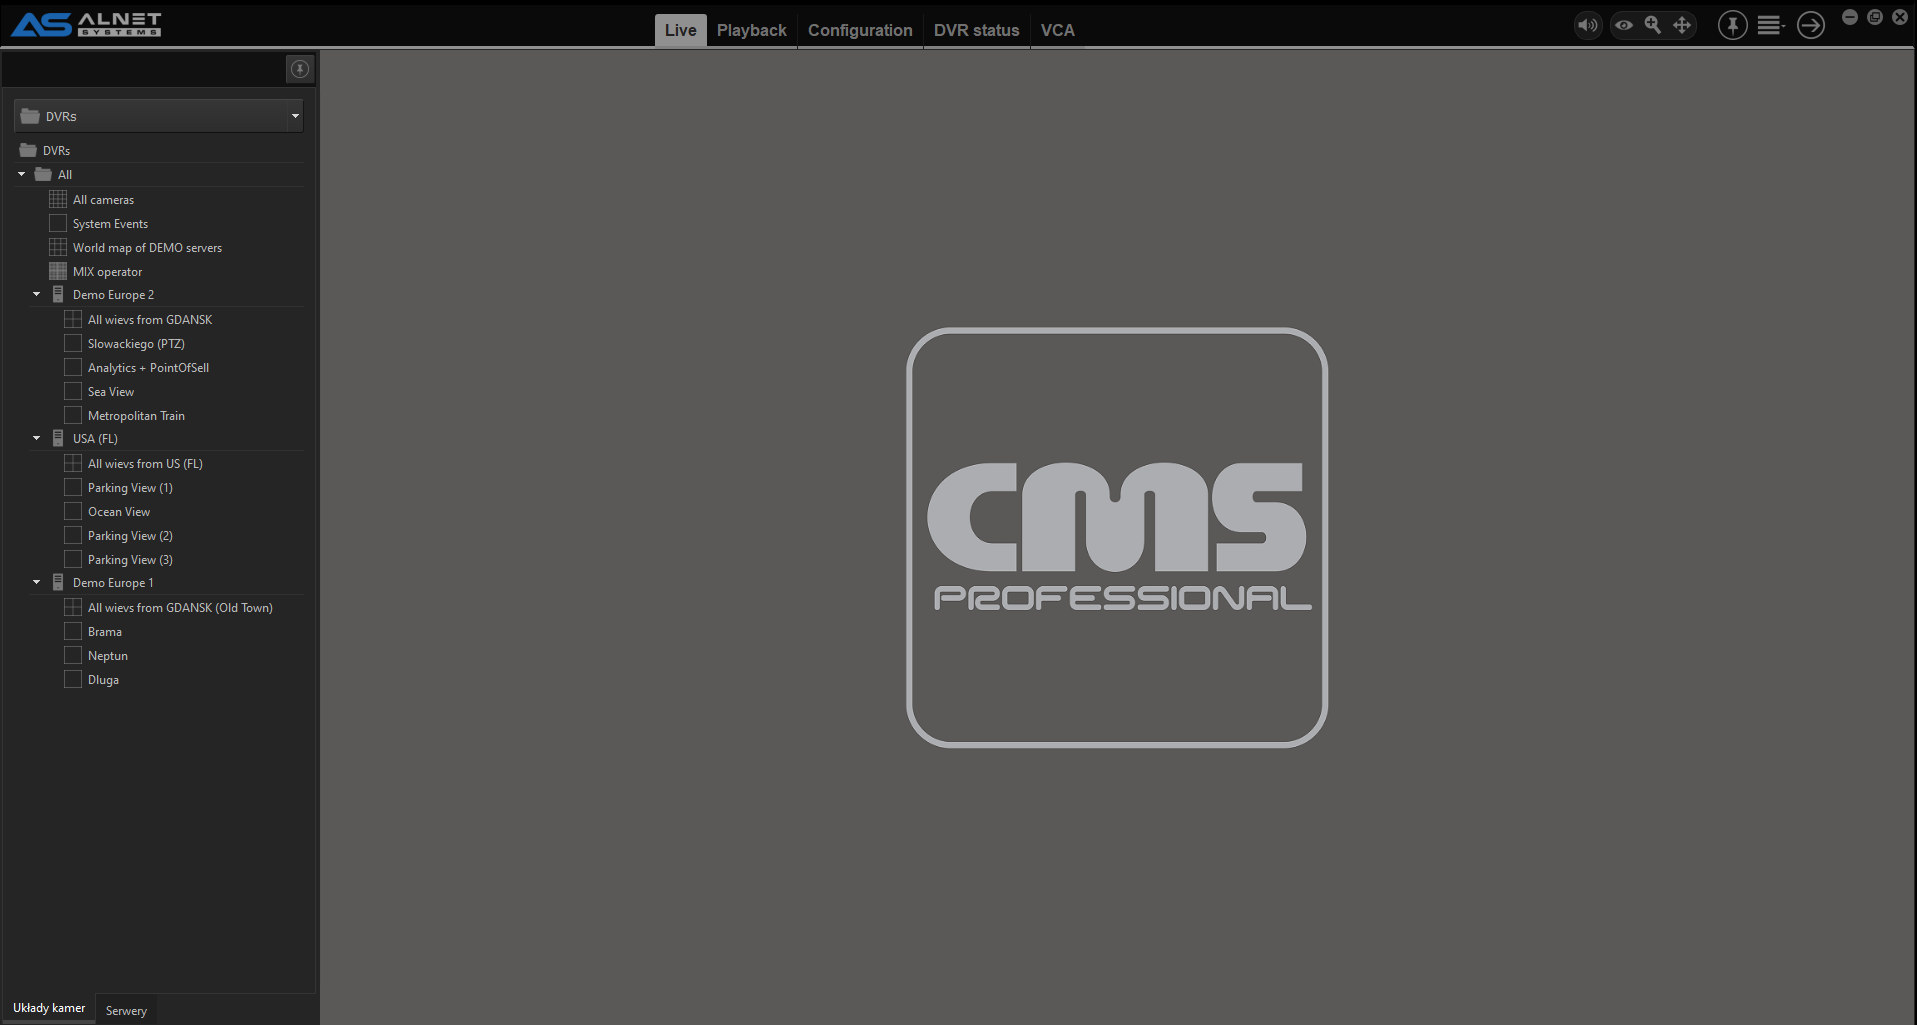 Cms 3.0.3.1 Dvr Software